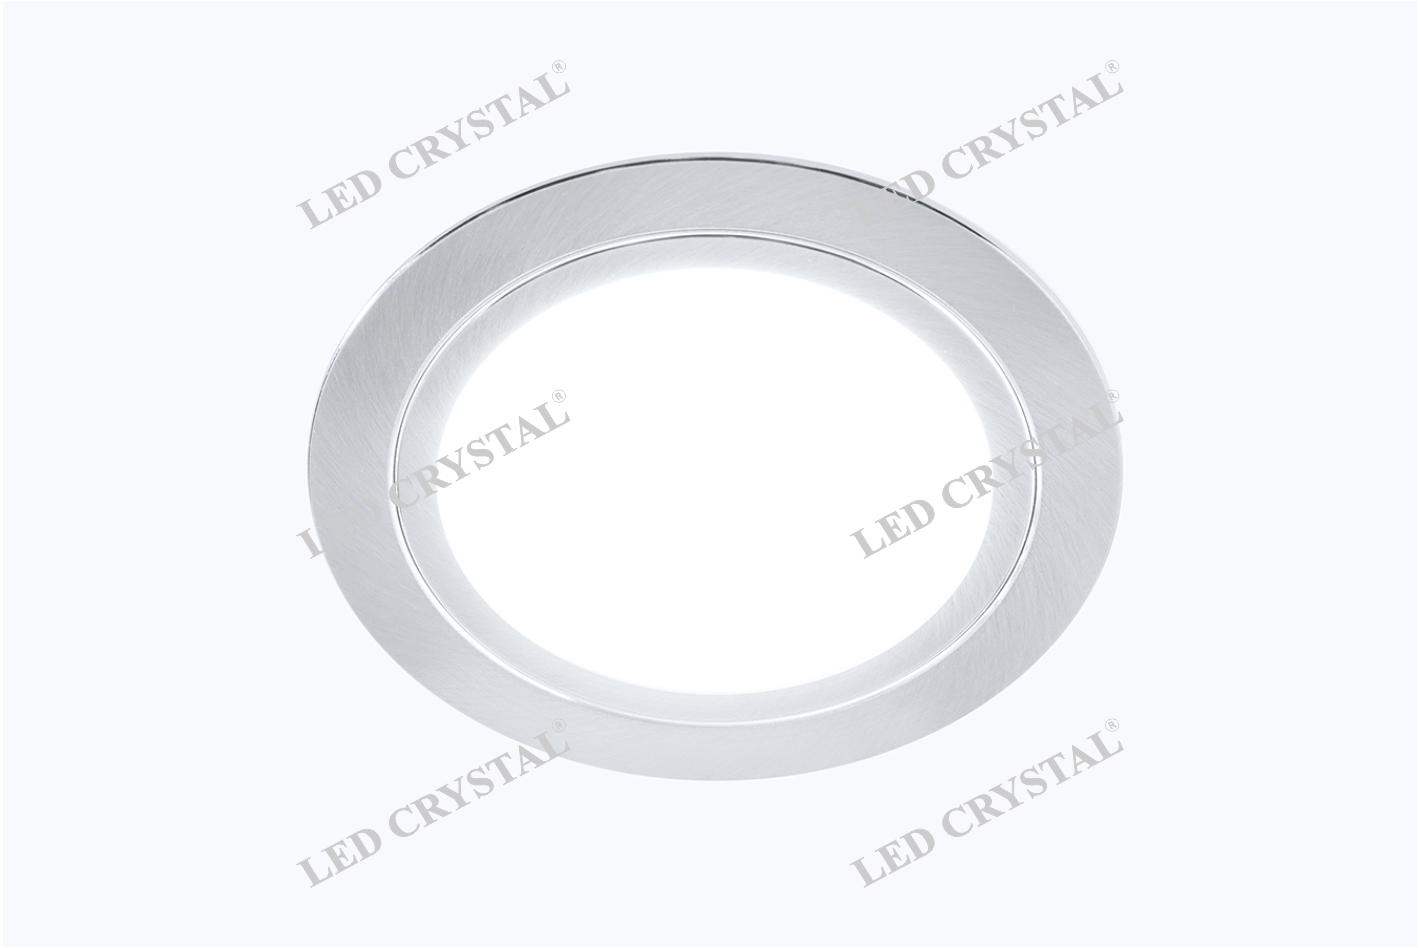 LED CRISTAL Светильник LED встраиваемый круглый D66мм, 12V, 3.2W, 6500К, 260лм, IP20, никель матовый